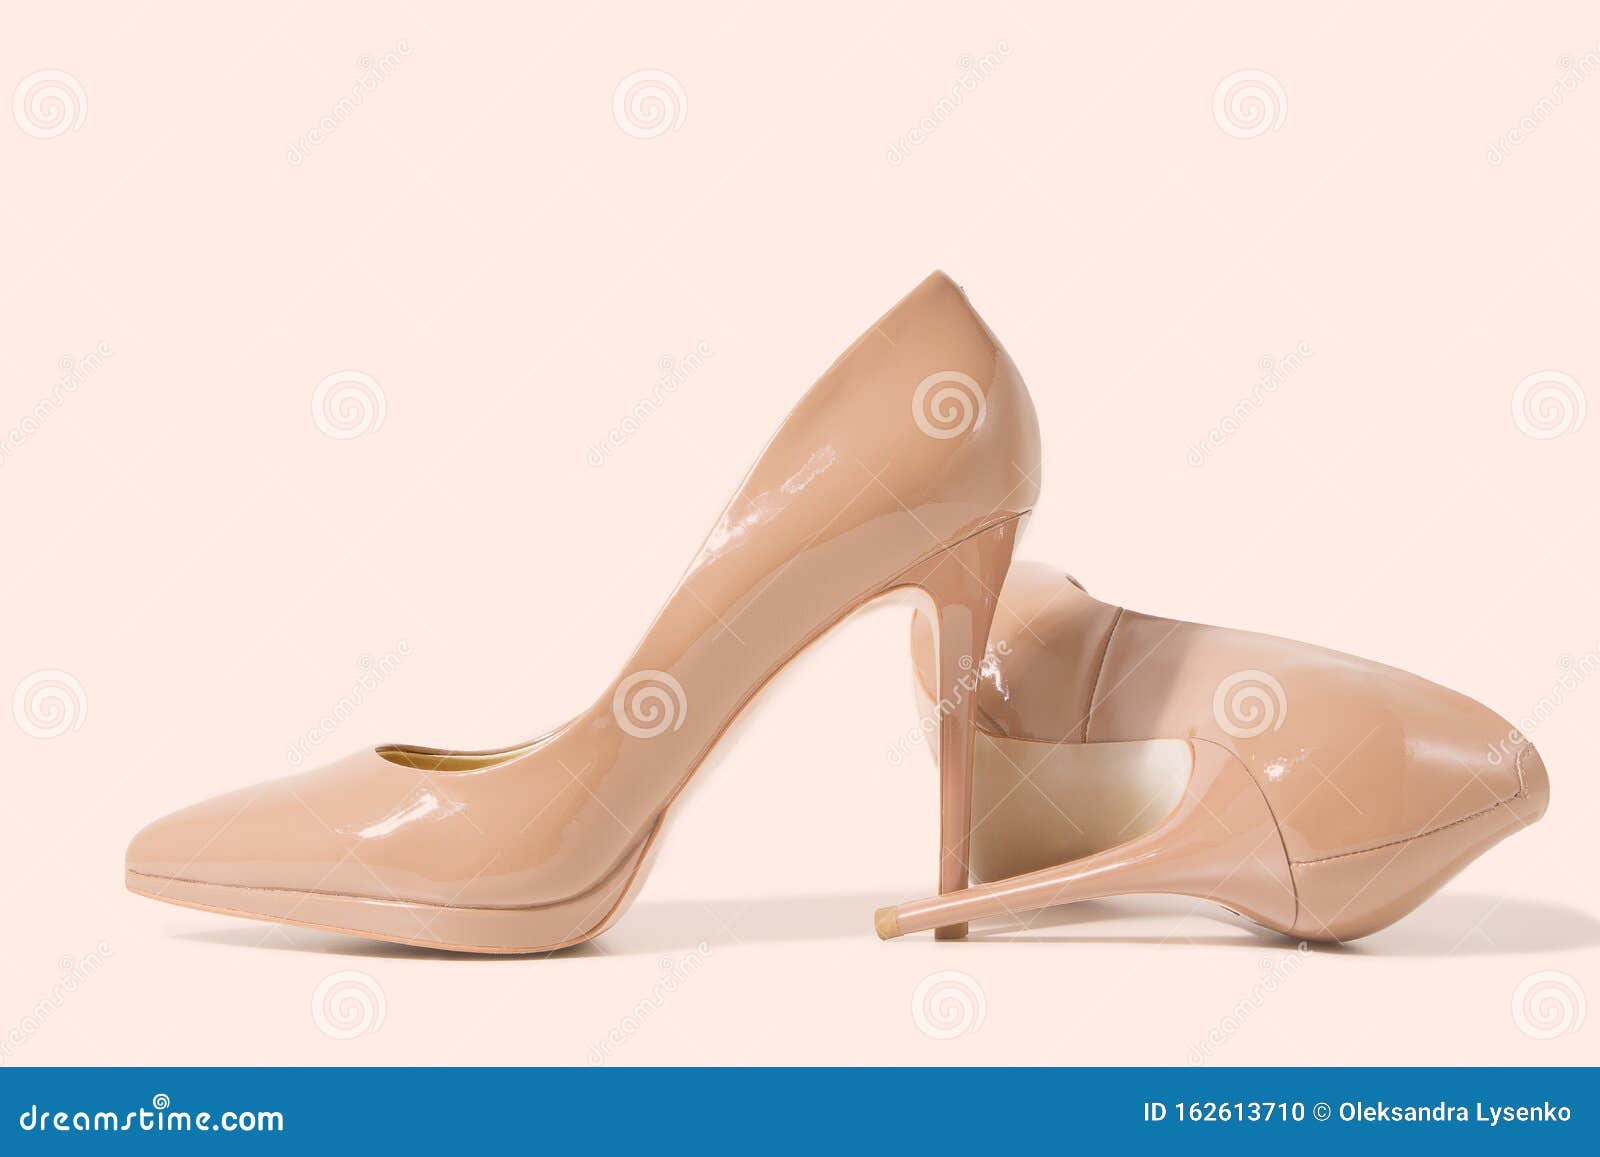 Zapatos De Mujer Los Tacones Altos Se Cierran Vista Superior La Moda Femenina Accesorios Para Damas Zapato Formal Cas de archivo - Imagen de primer, fondo: 162613710